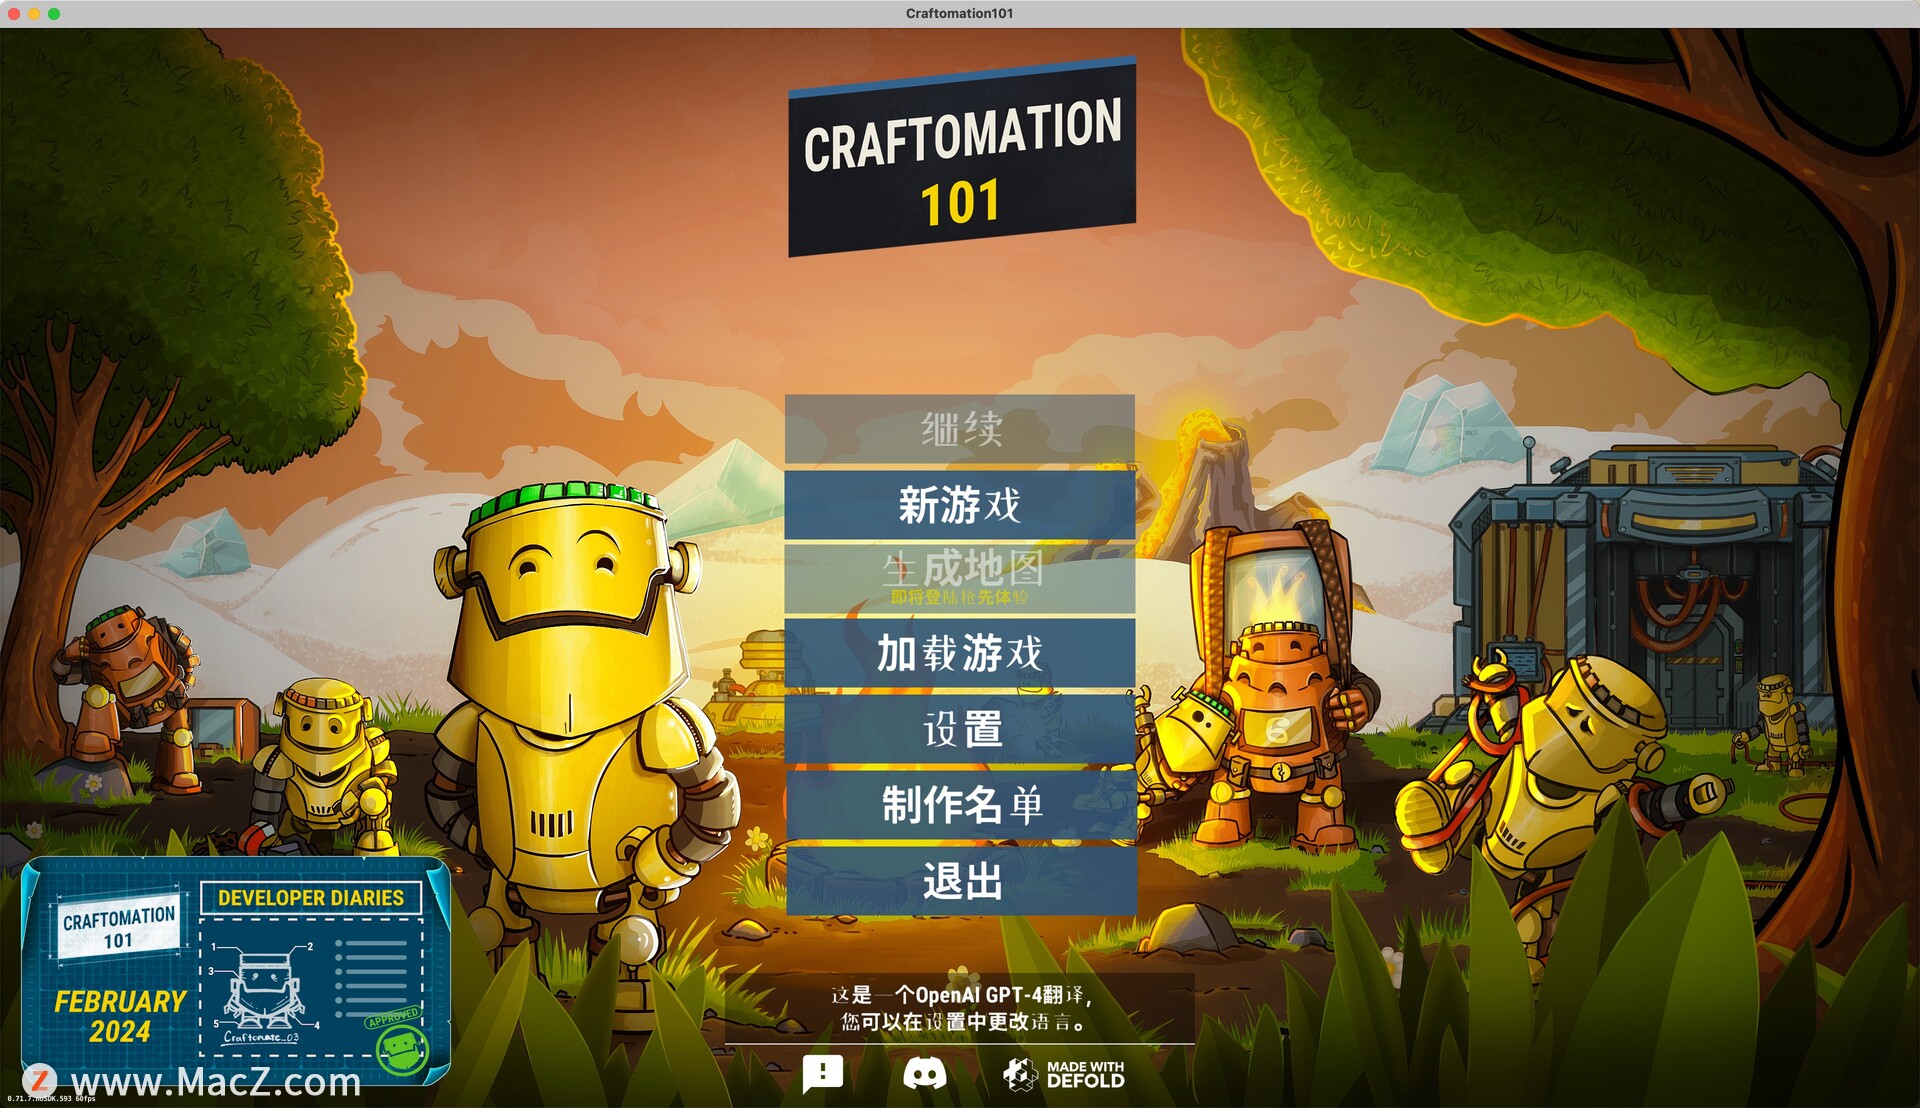 自动化 101/手工制作101：编程工艺Craftomation 101: Programming & Craft